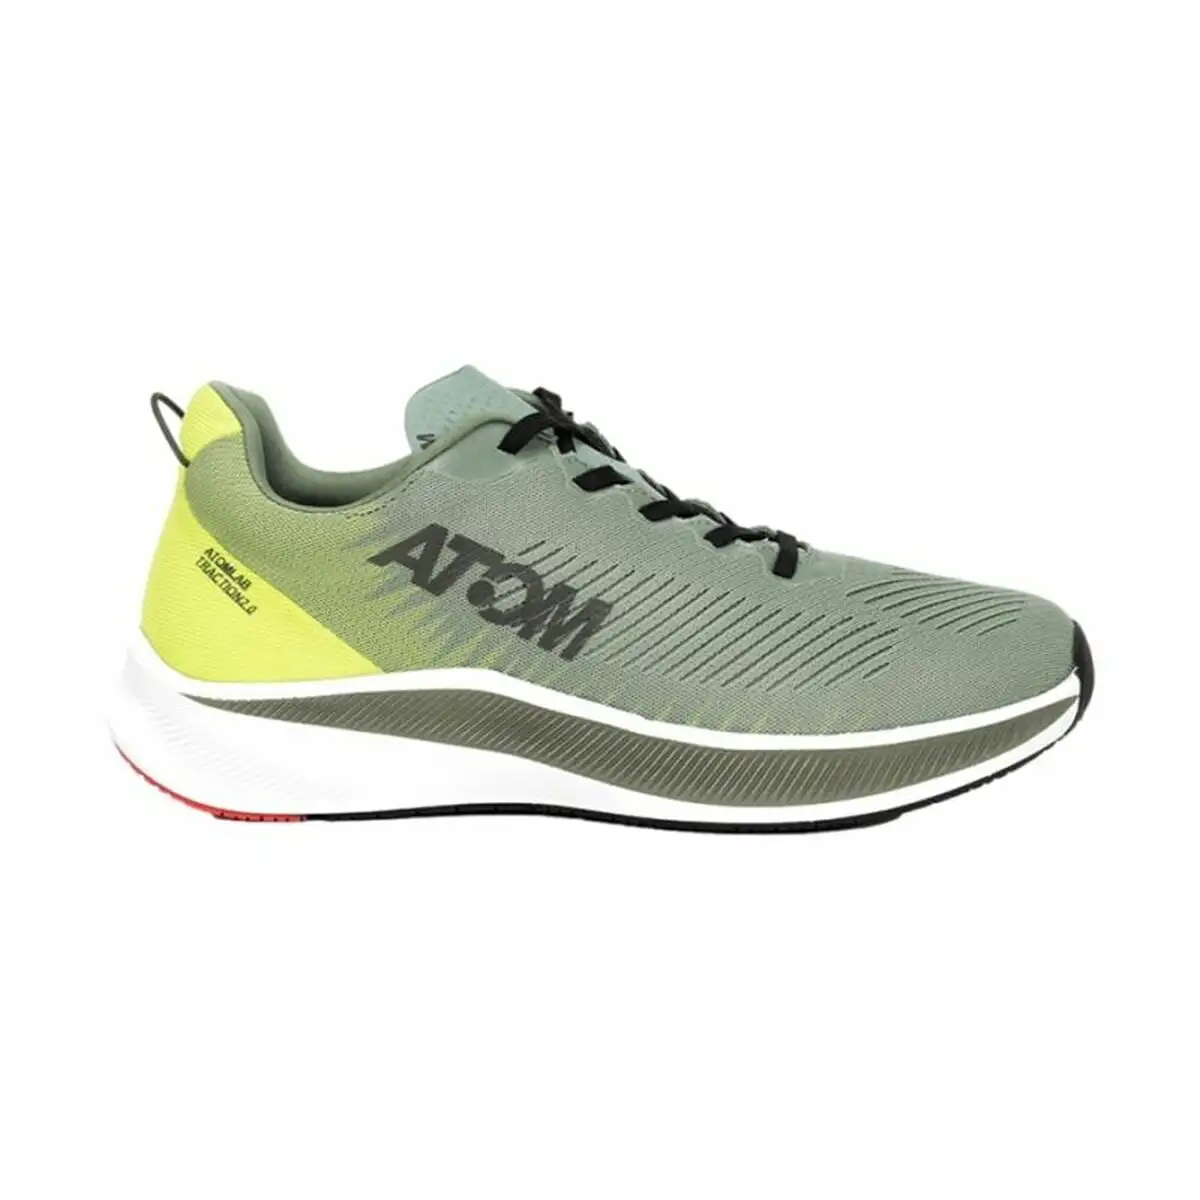 Chaussures de running pour adultes atom at134 vert homme_3540. Bienvenue chez DIAYTAR SENEGAL - Où Chaque Achat Fait une Différence. Découvrez notre gamme de produits qui reflètent l'engagement envers la qualité et le respect de l'environnement.